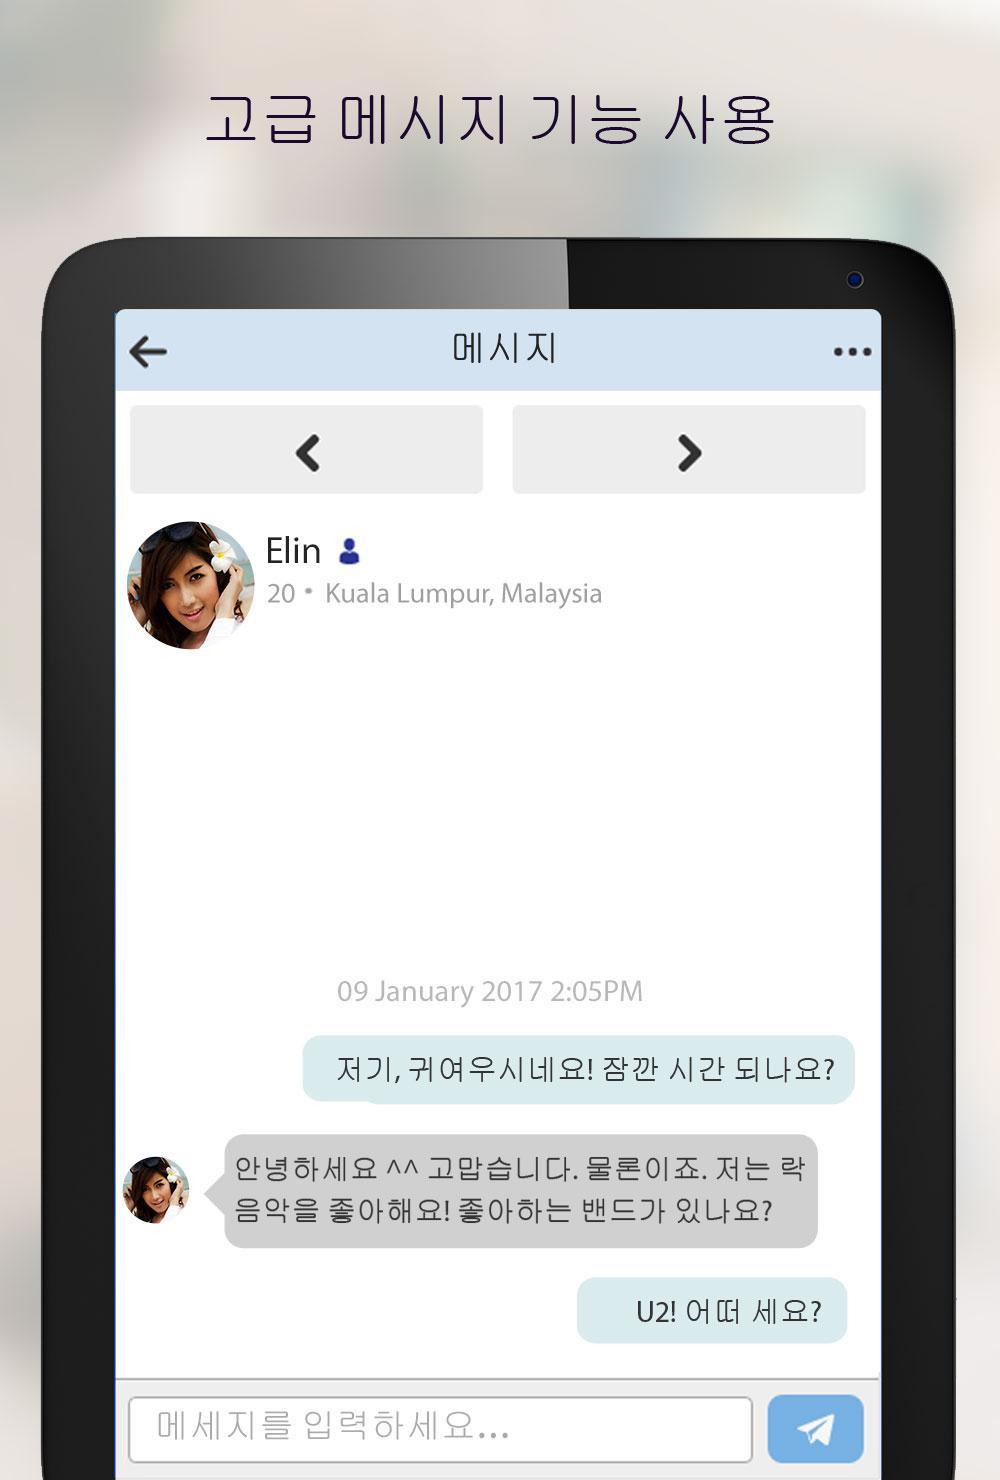 MalaysianCupid - 말레이시아인 데이트 앱